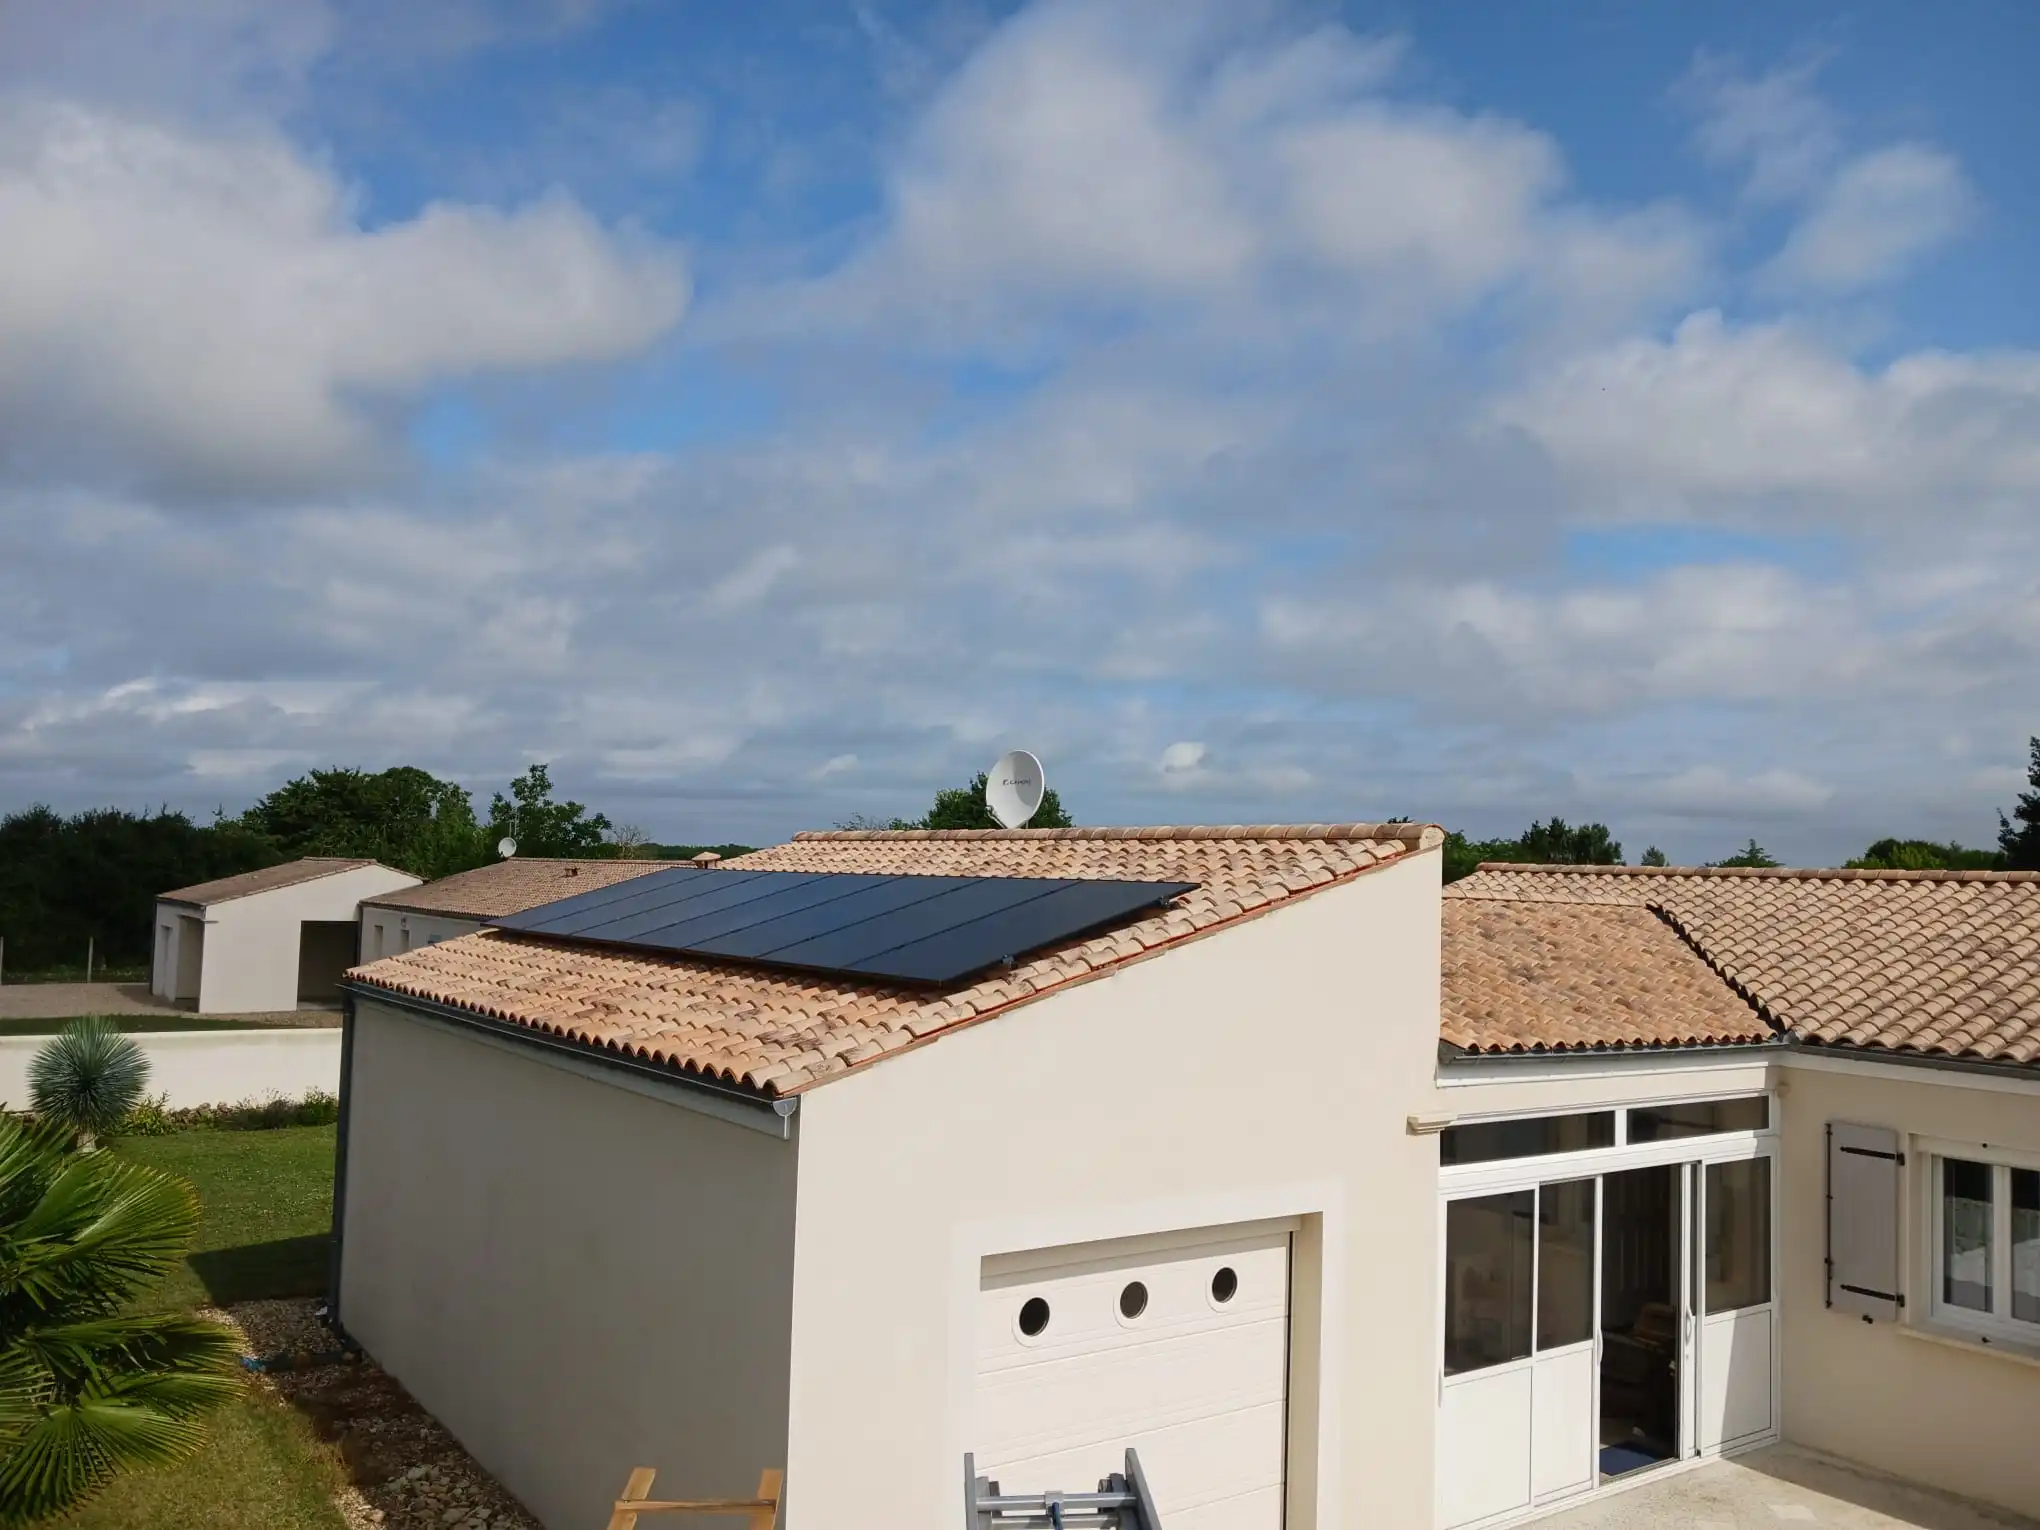 panneaux solaires sur toits cholet